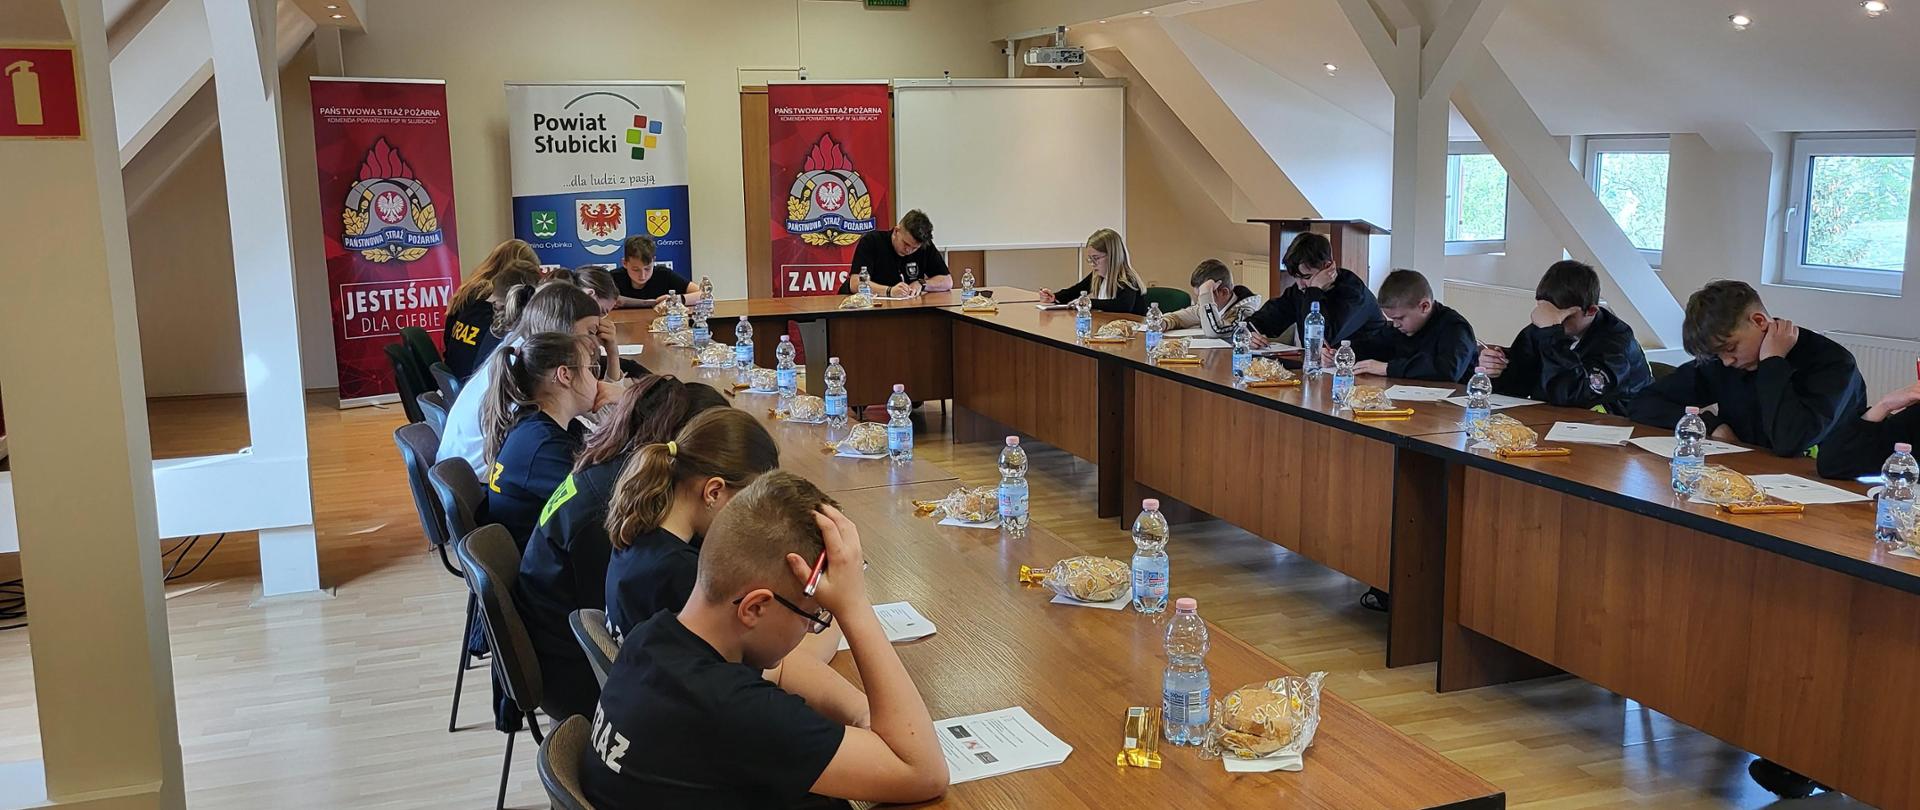 Widok wnętrza sali konferencyjnej Starostwa Powiatowego w Słubicach. Przy stolikach siedzą uczestnicy turnieju rozwiązując zadania testowe.